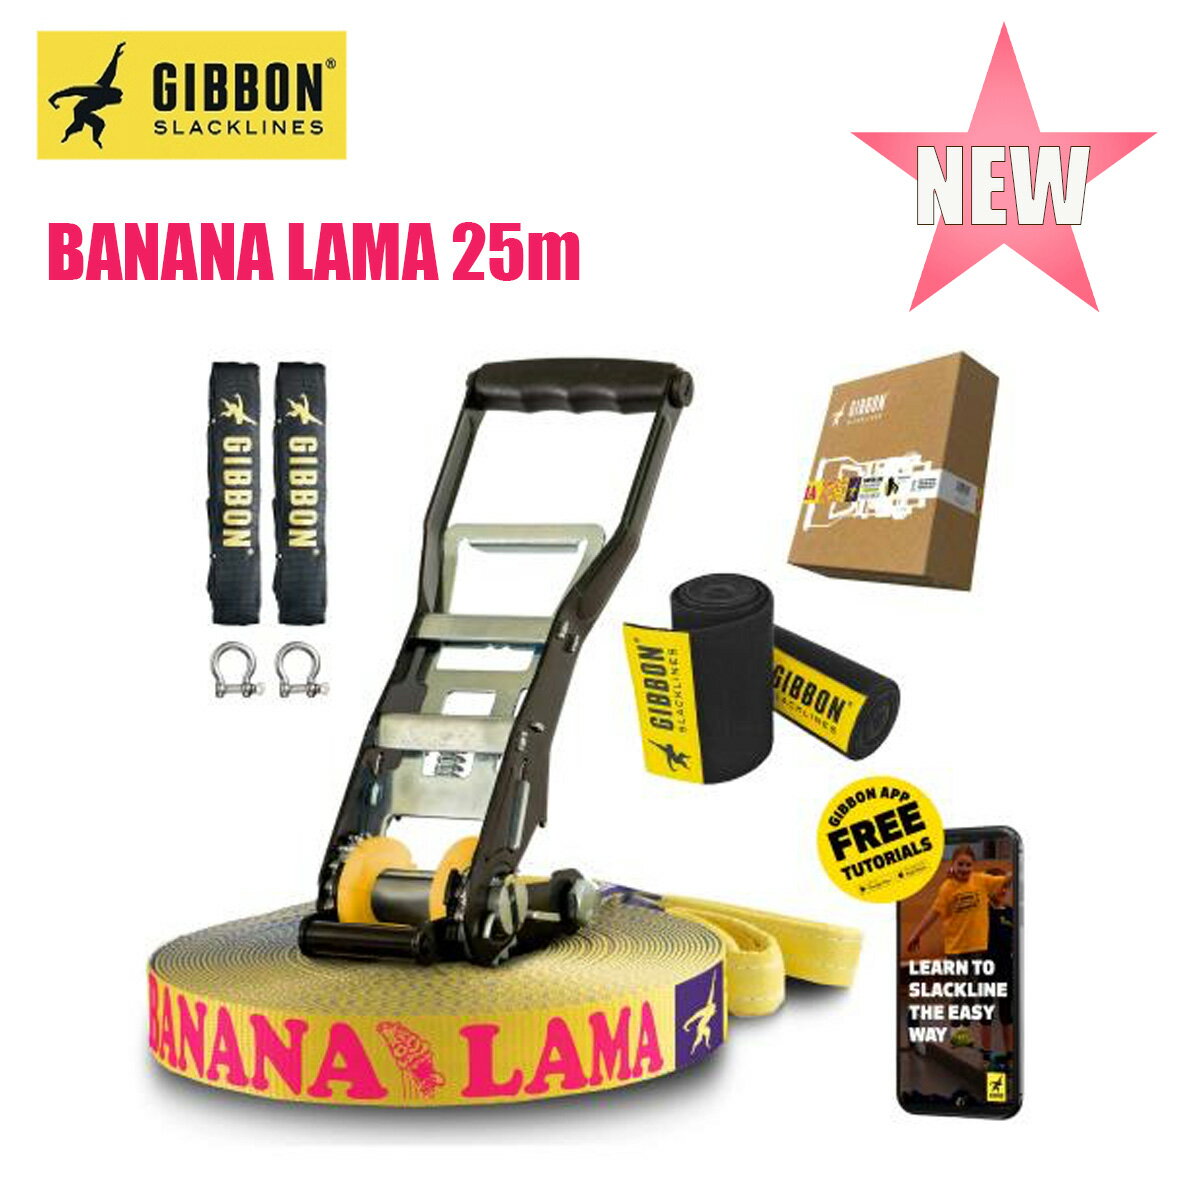 ギボン スラックライン バナナラマ 25m GIBBON SLACKLINE BANANA LAMA TREEWEAR 3.5cm幅 ツリーウェア オールラウンド 初心者 中級者 上級者 ニューモデル 新商品 バランス 体幹 フィットネス アウトドア スポーツ 正規品